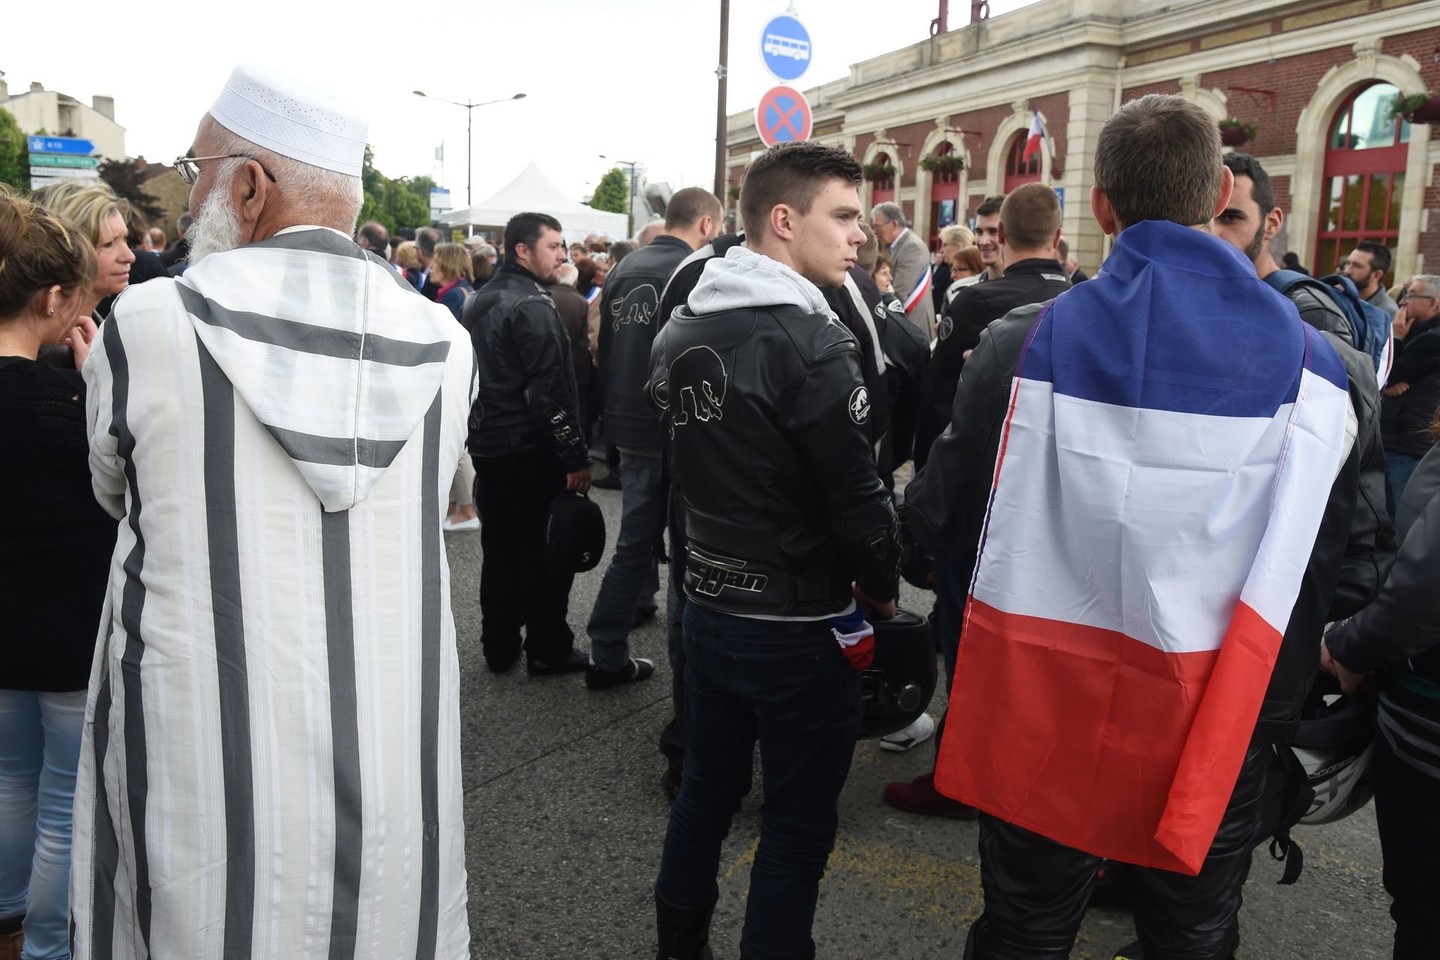 Prancūzijoje egzaminų vertintojams buvo nurodyta pranešti apie rasistinius, antisemitinius ir džihadistinius žodžius, kuriuos jie rado taisydami mokinių baigiamuosius egzaminus.<br>AFP/“Scanpix“ nuotr.